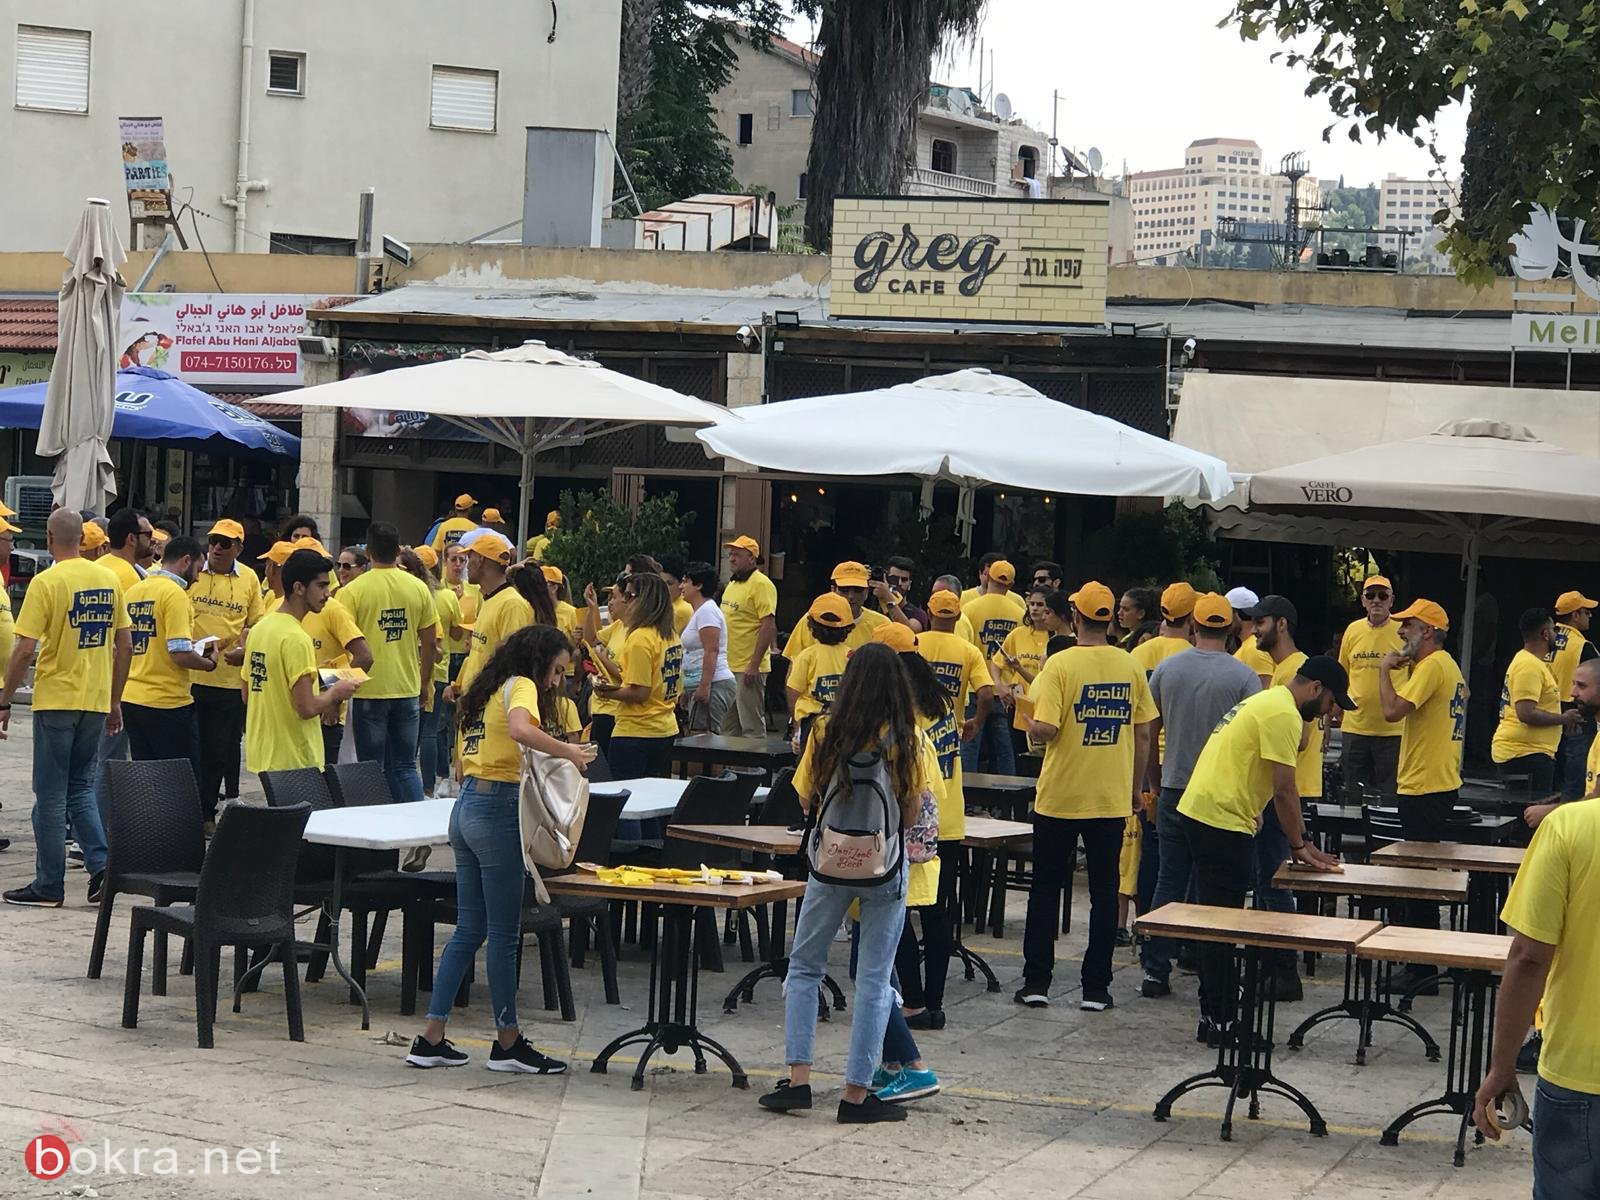 وليد عفيفي وداعموه يوزعون المناشير الانتخابية في شوارع الناصرة-12